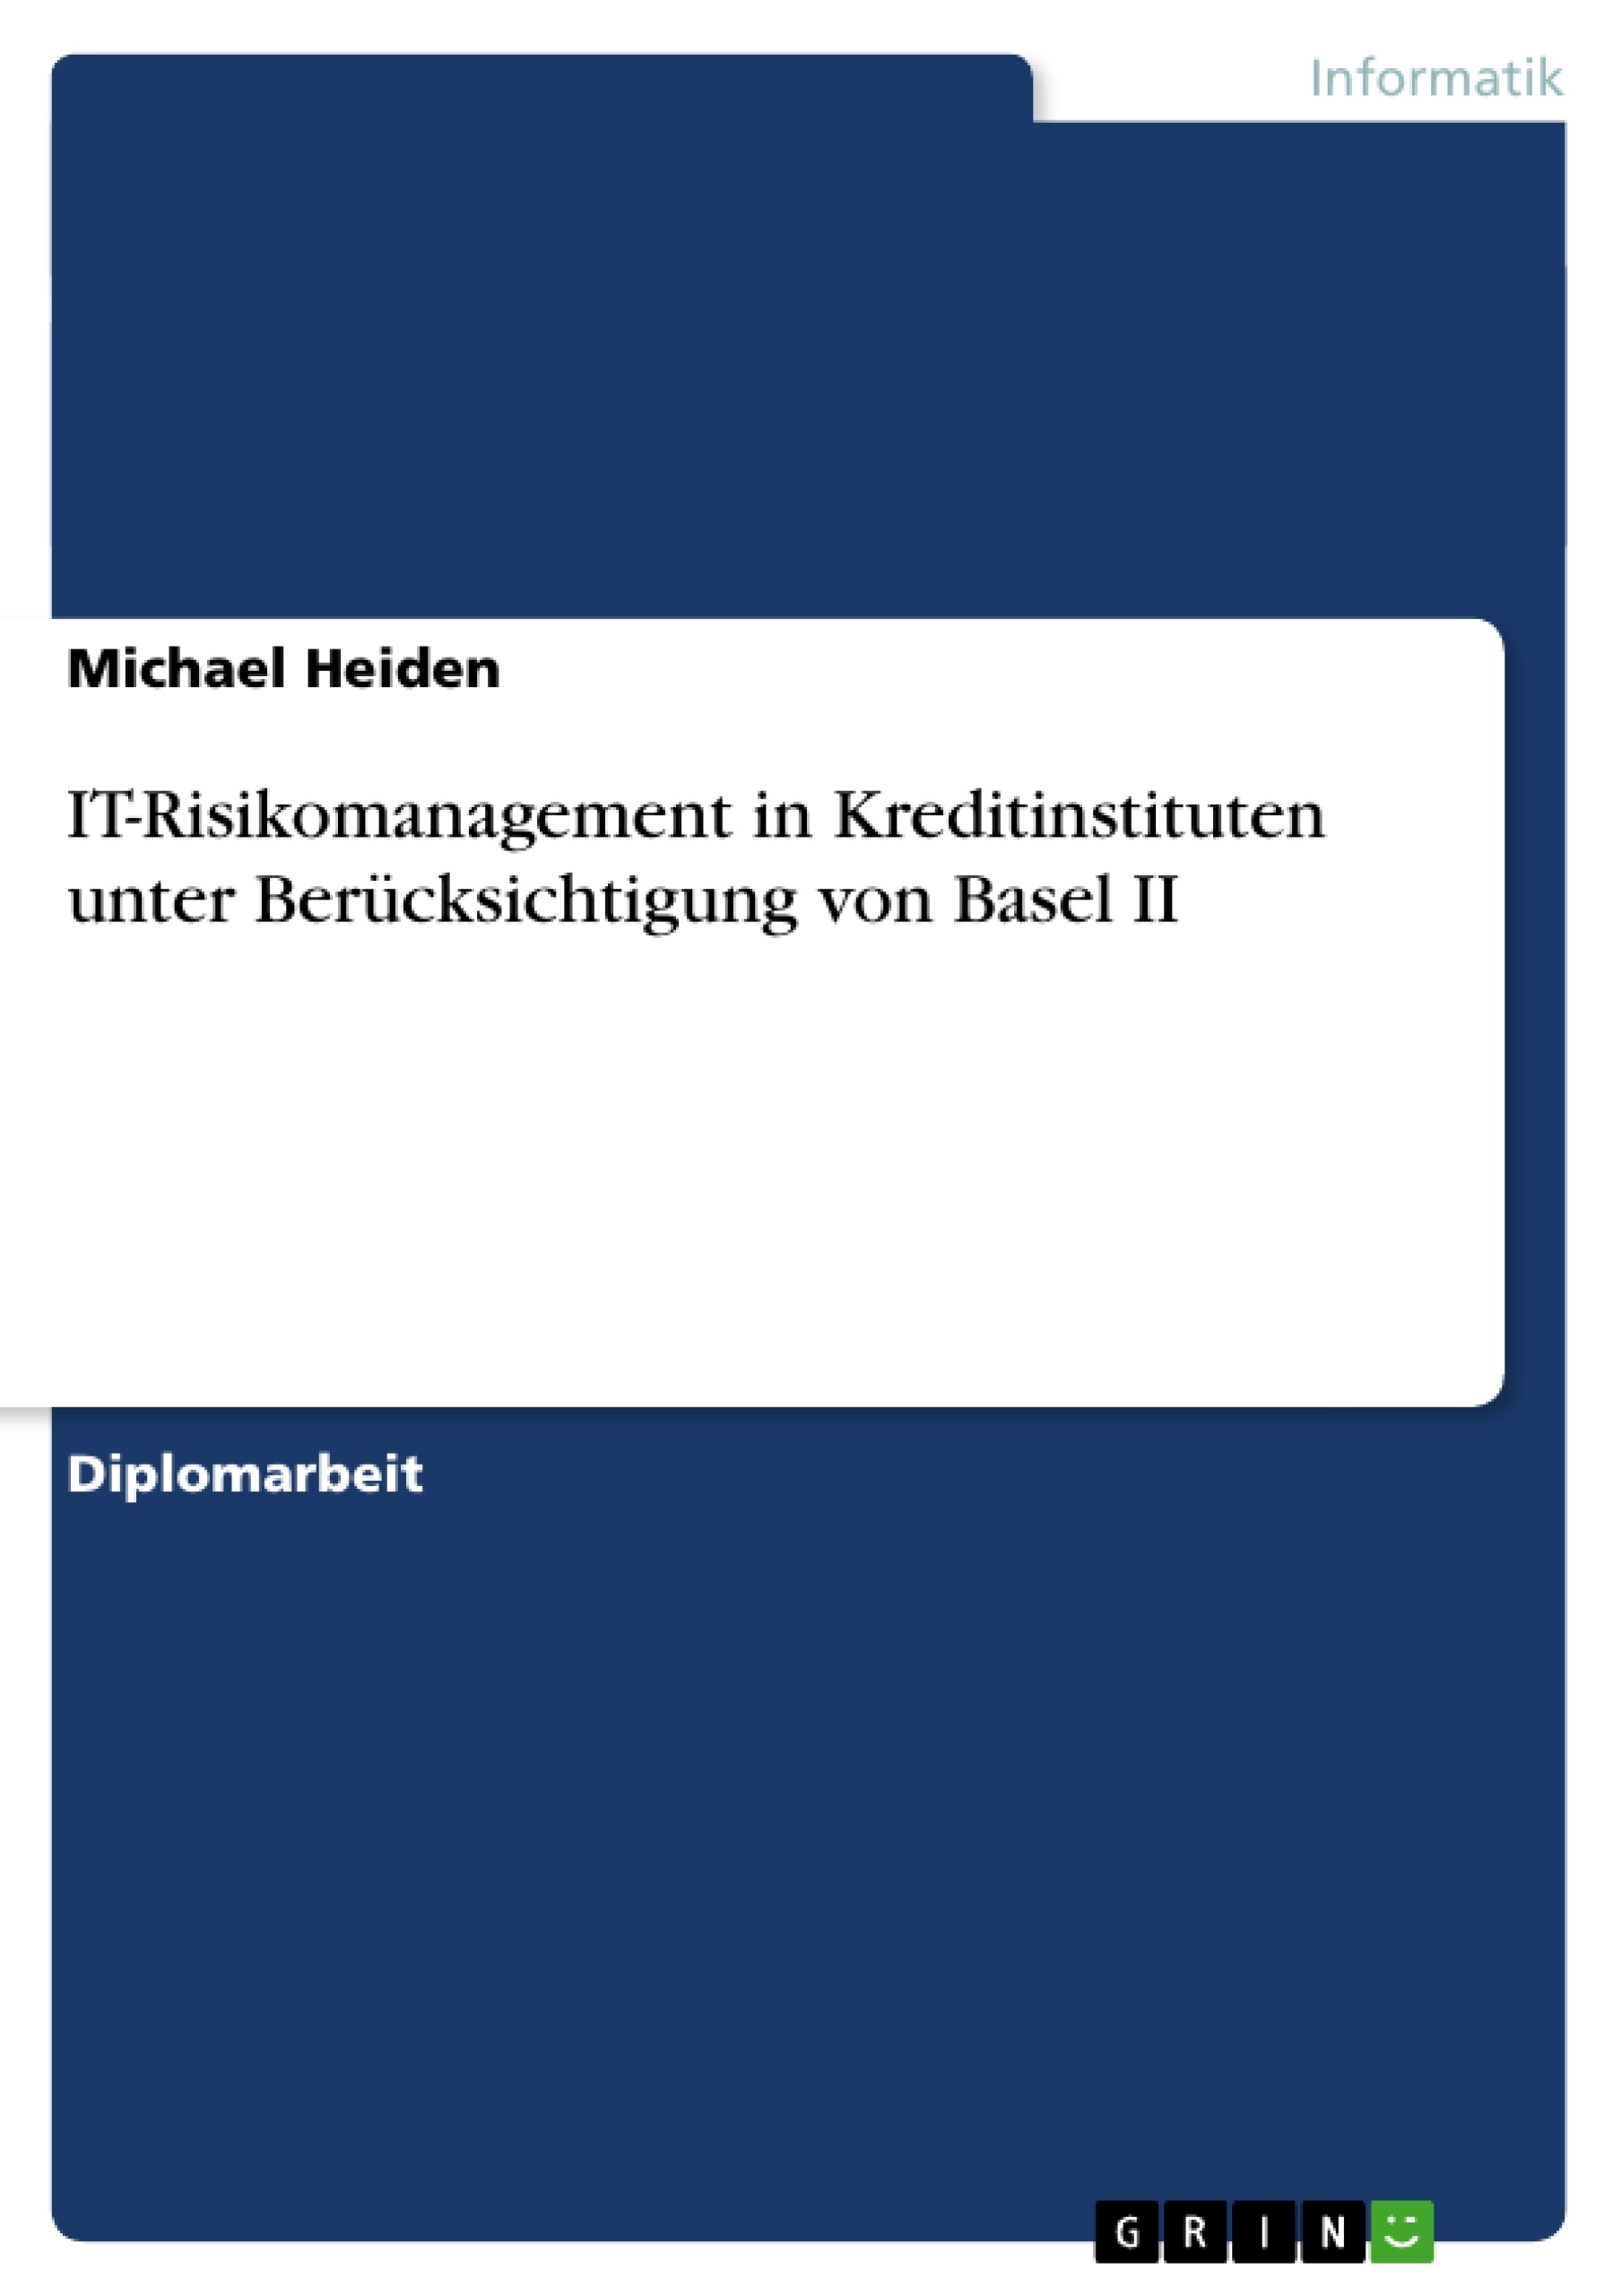 Title: IT-Risikomanagement in Kreditinstituten unter Berücksichtigung von Basel II